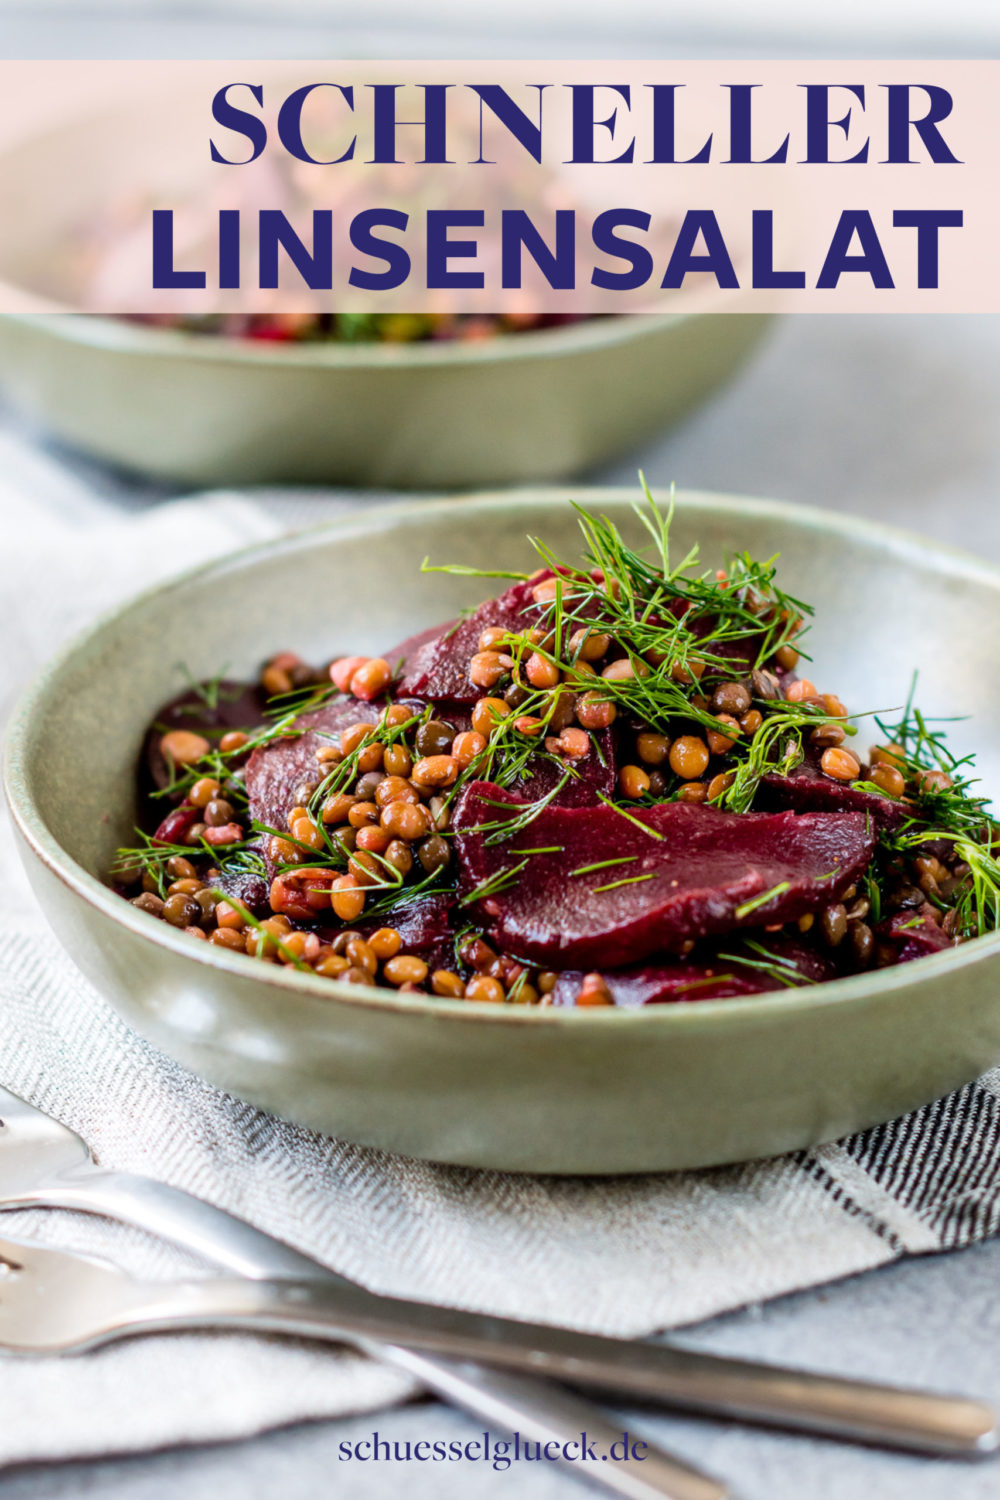 Rote Bete Salat mit Linsen und Dill – Hit aus dem Vorrat!